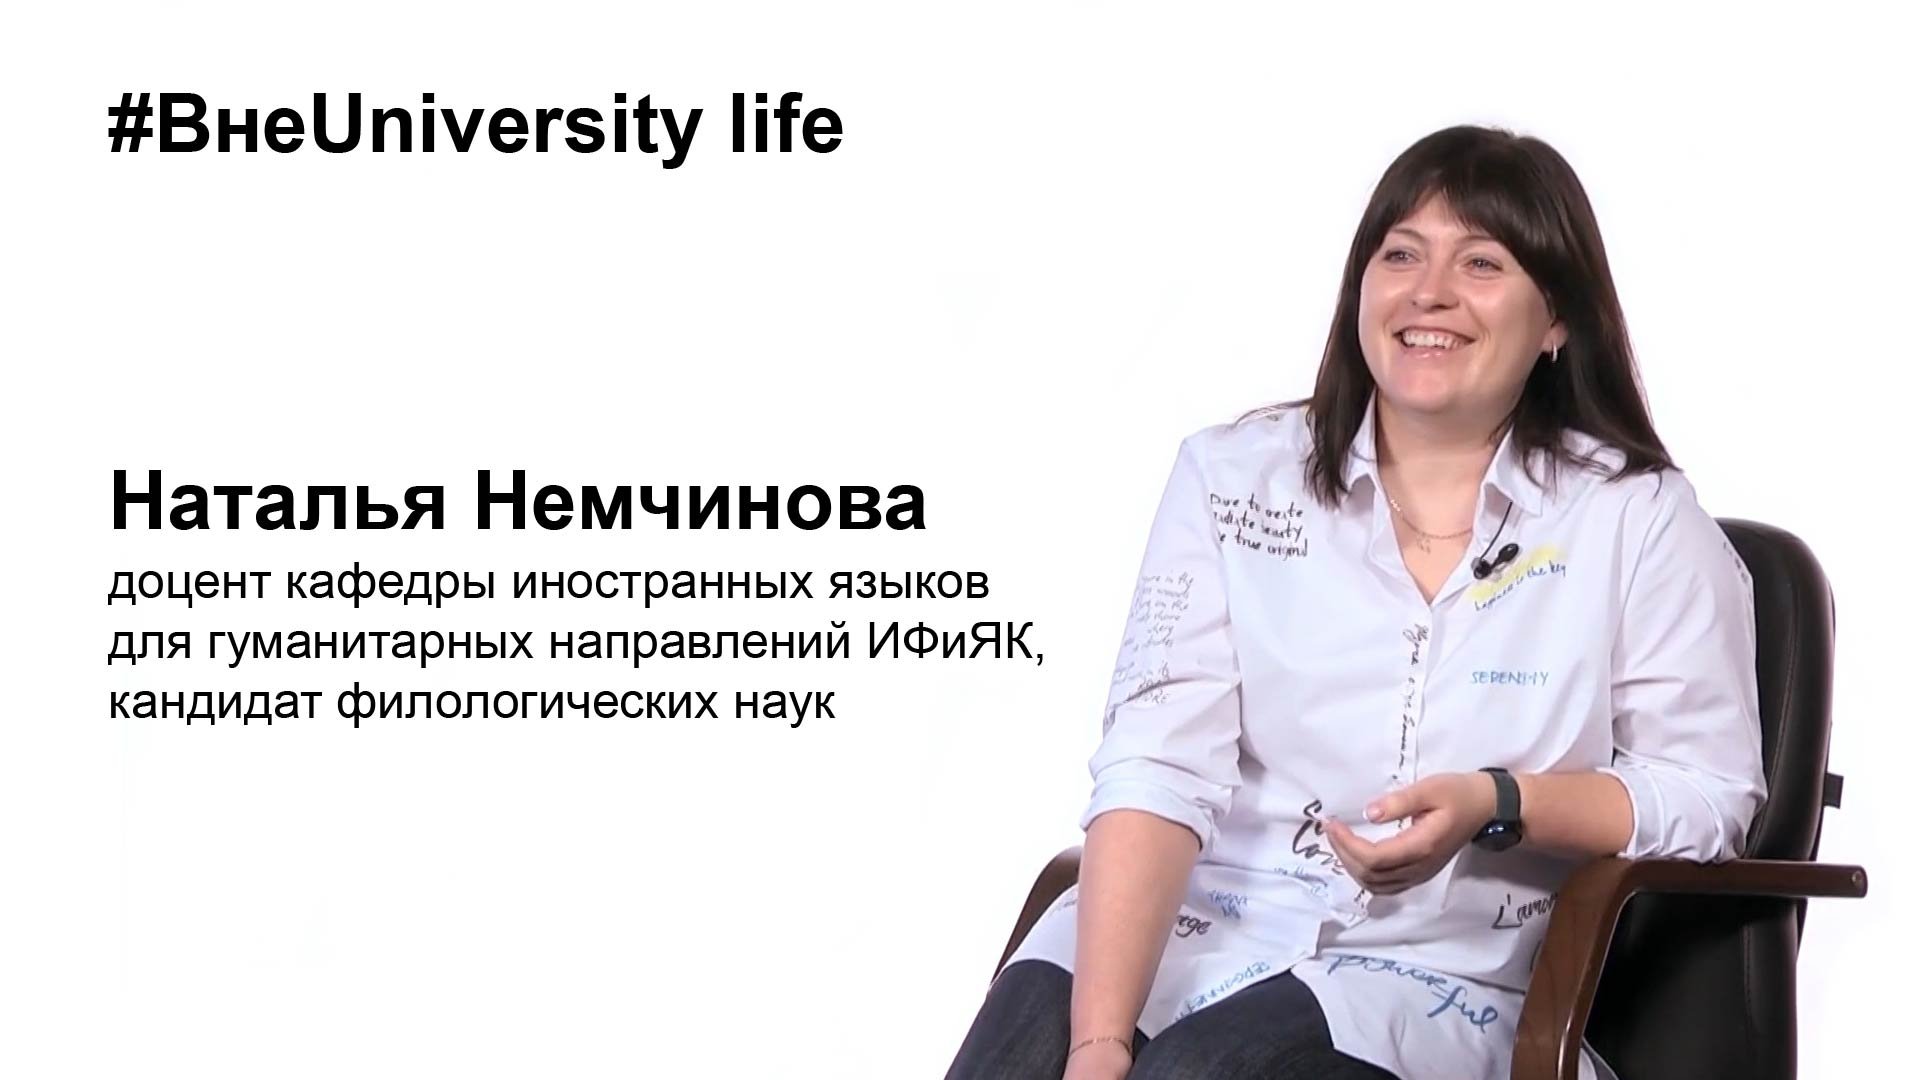 ВнеUniversity life: Наталья Немчинова, ИФиЯК